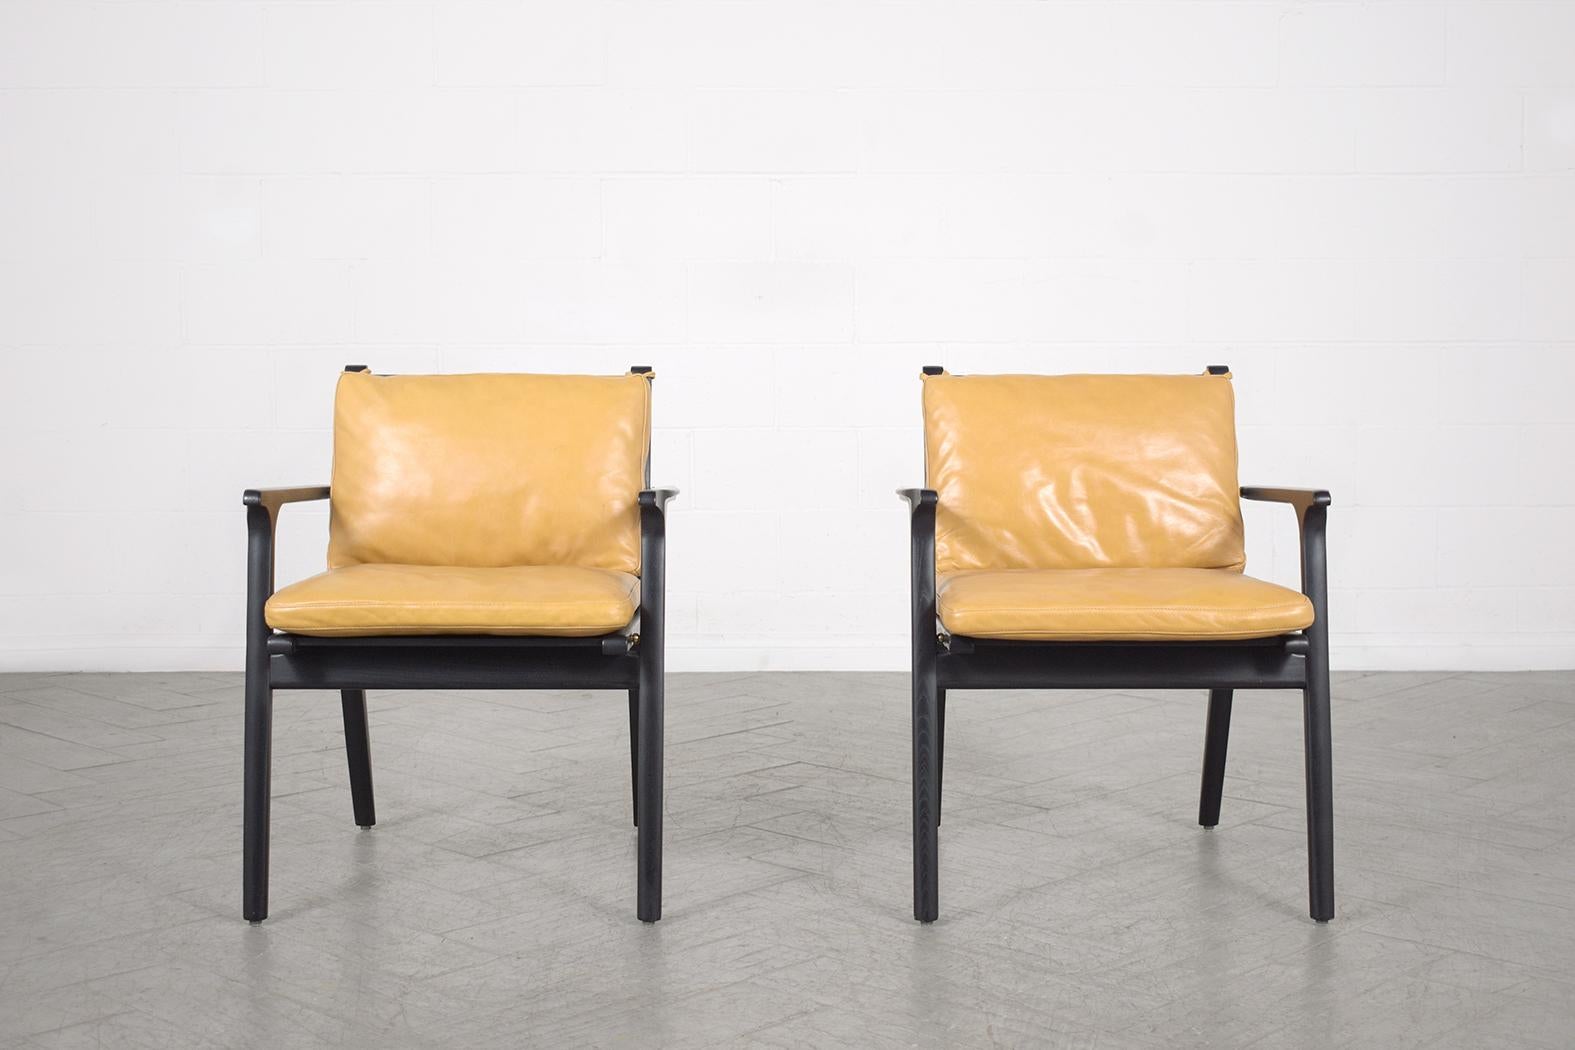 Erleben Sie den Inbegriff von modernem Design mit unseren handgefertigten Ledersesseln. Diese Stühle, die für die ultimative Mischung aus Komfort und Stil konstruiert wurden, stehen fest auf geschnitzten Eichenrahmen, die mit einer schicken